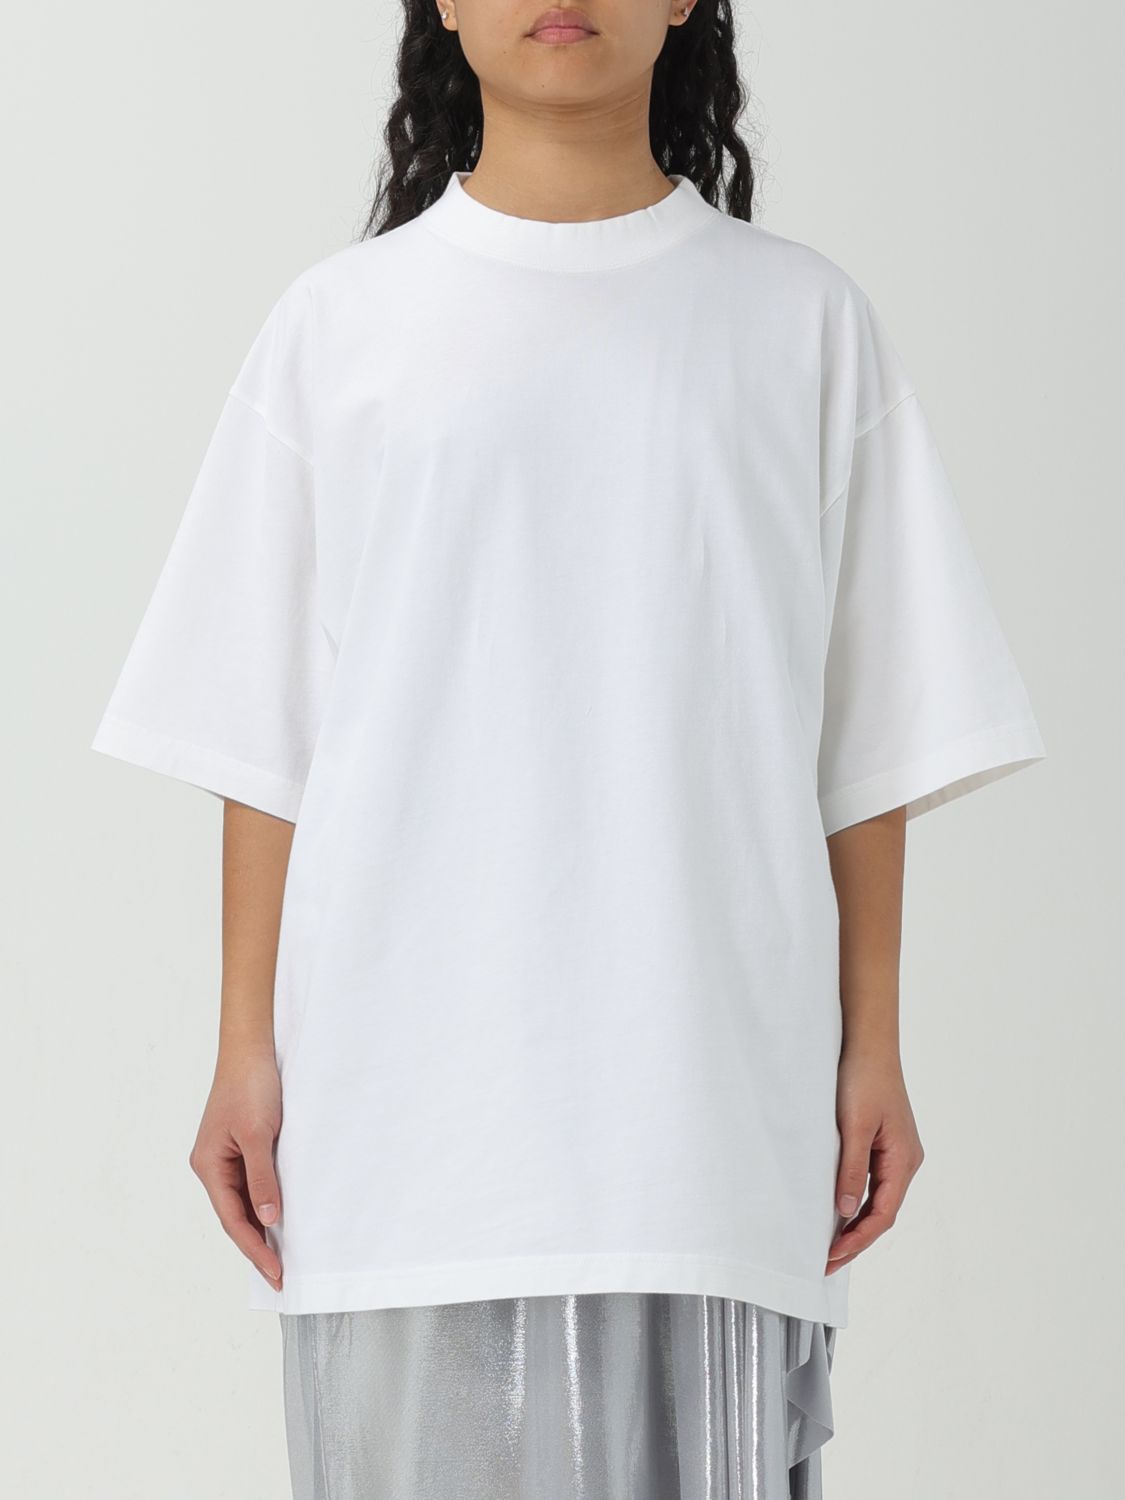 BALENCIAGA T恤 BALENCIAGA 女士 颜色 白色,F17116001